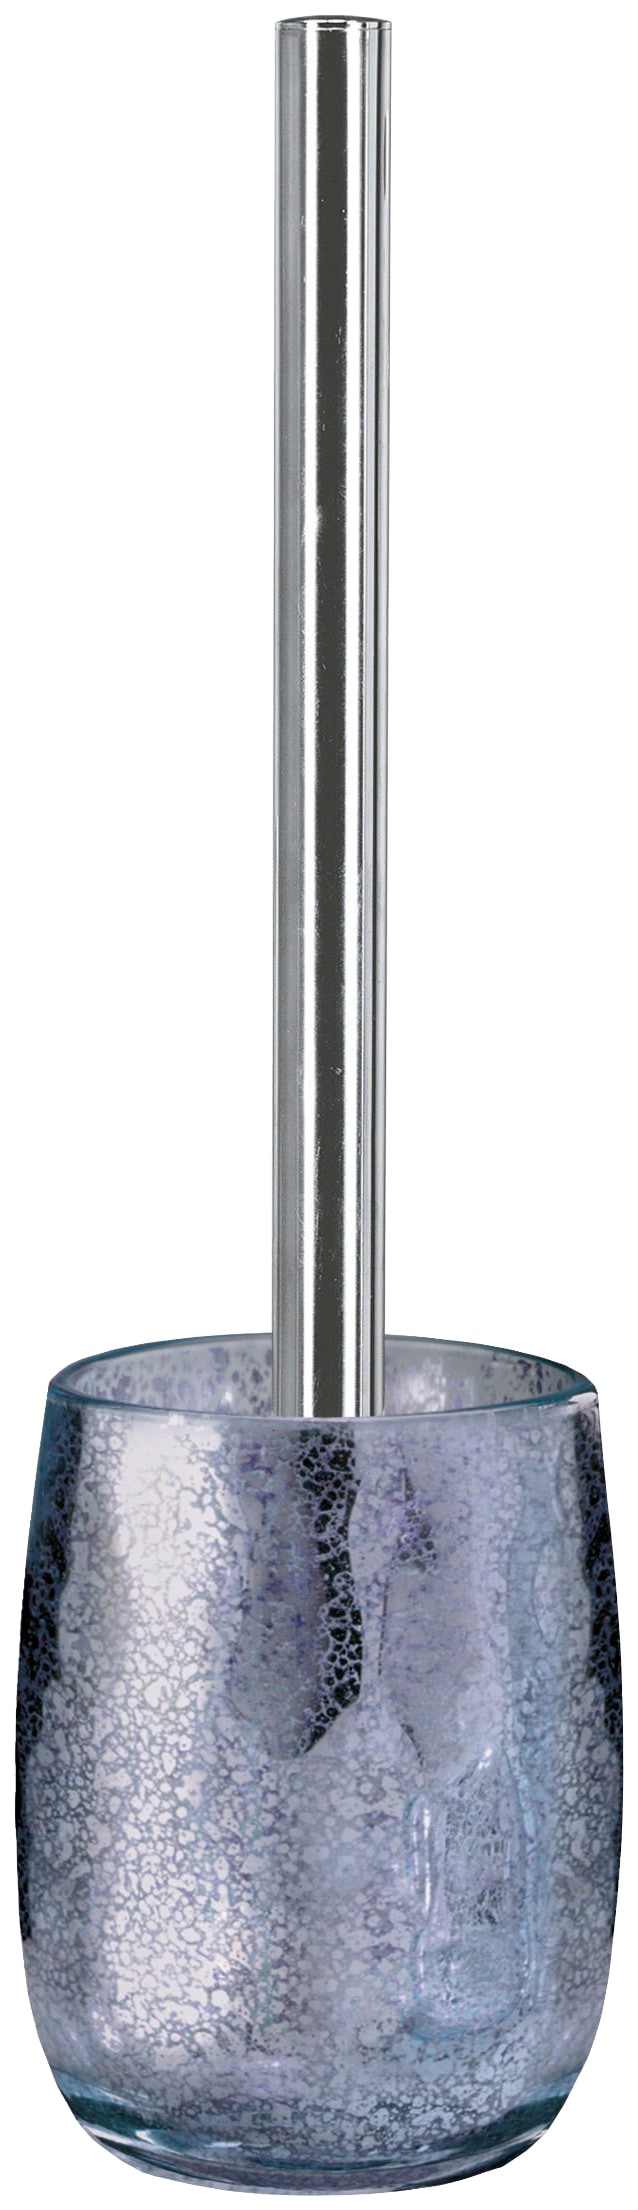 Kleine Wolke WC-Garnitur »Mercury«, aus Sicherheitsglas, hochwertige Accessoire Serie aus Glas